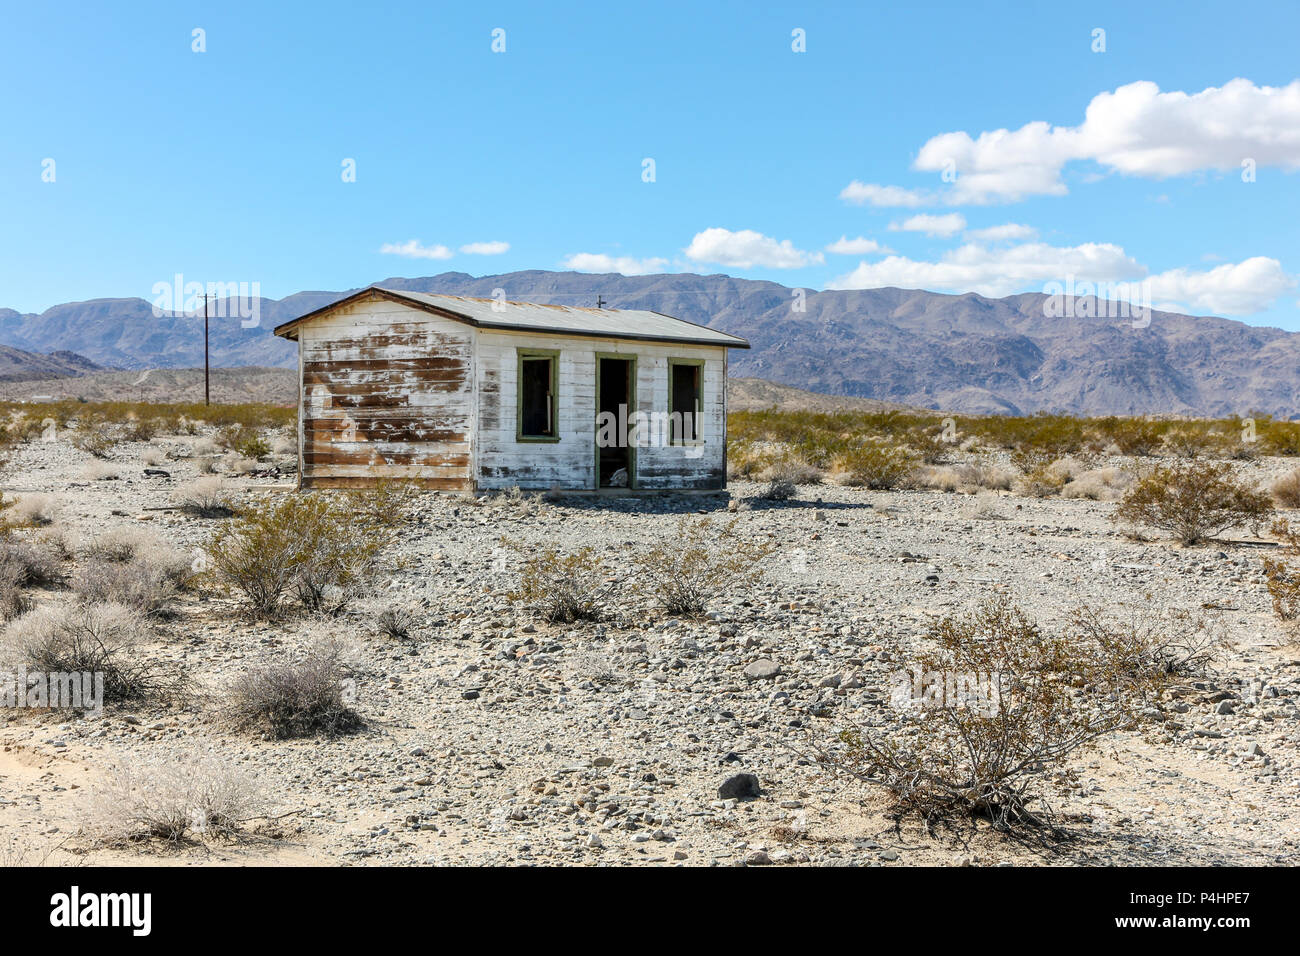 Un solitaire en bois abandonnés high desert homestead shack, près de Joshua Tree, le désert de Mojave, érodés, wonder Valley, Californie, USA. Banque D'Images